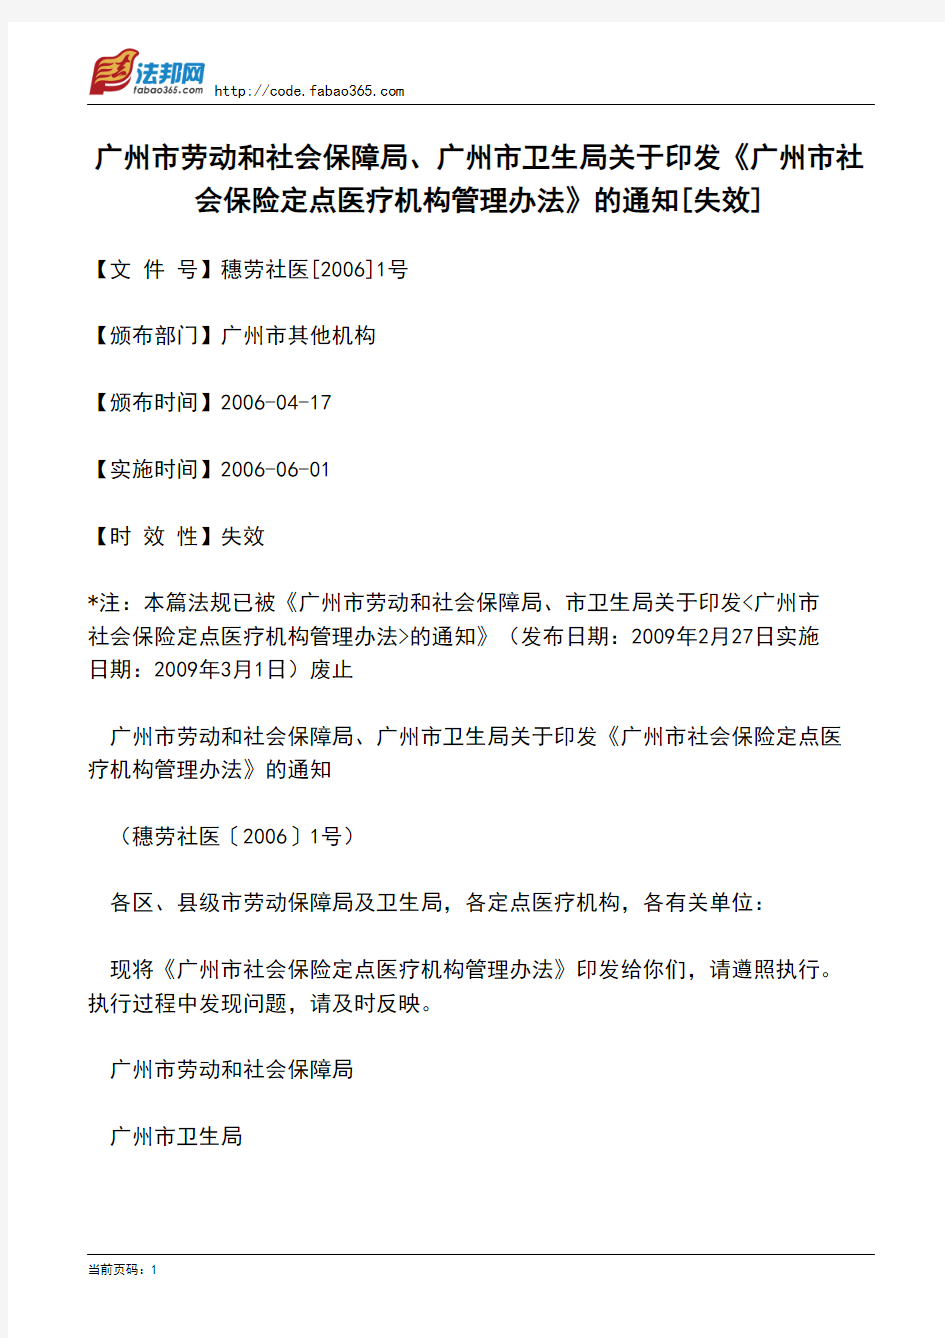 广州市劳动及社会保障局、广州市卫生局关于印发《广州市社会保险定点医疗机构管理办法》的通知[失效]